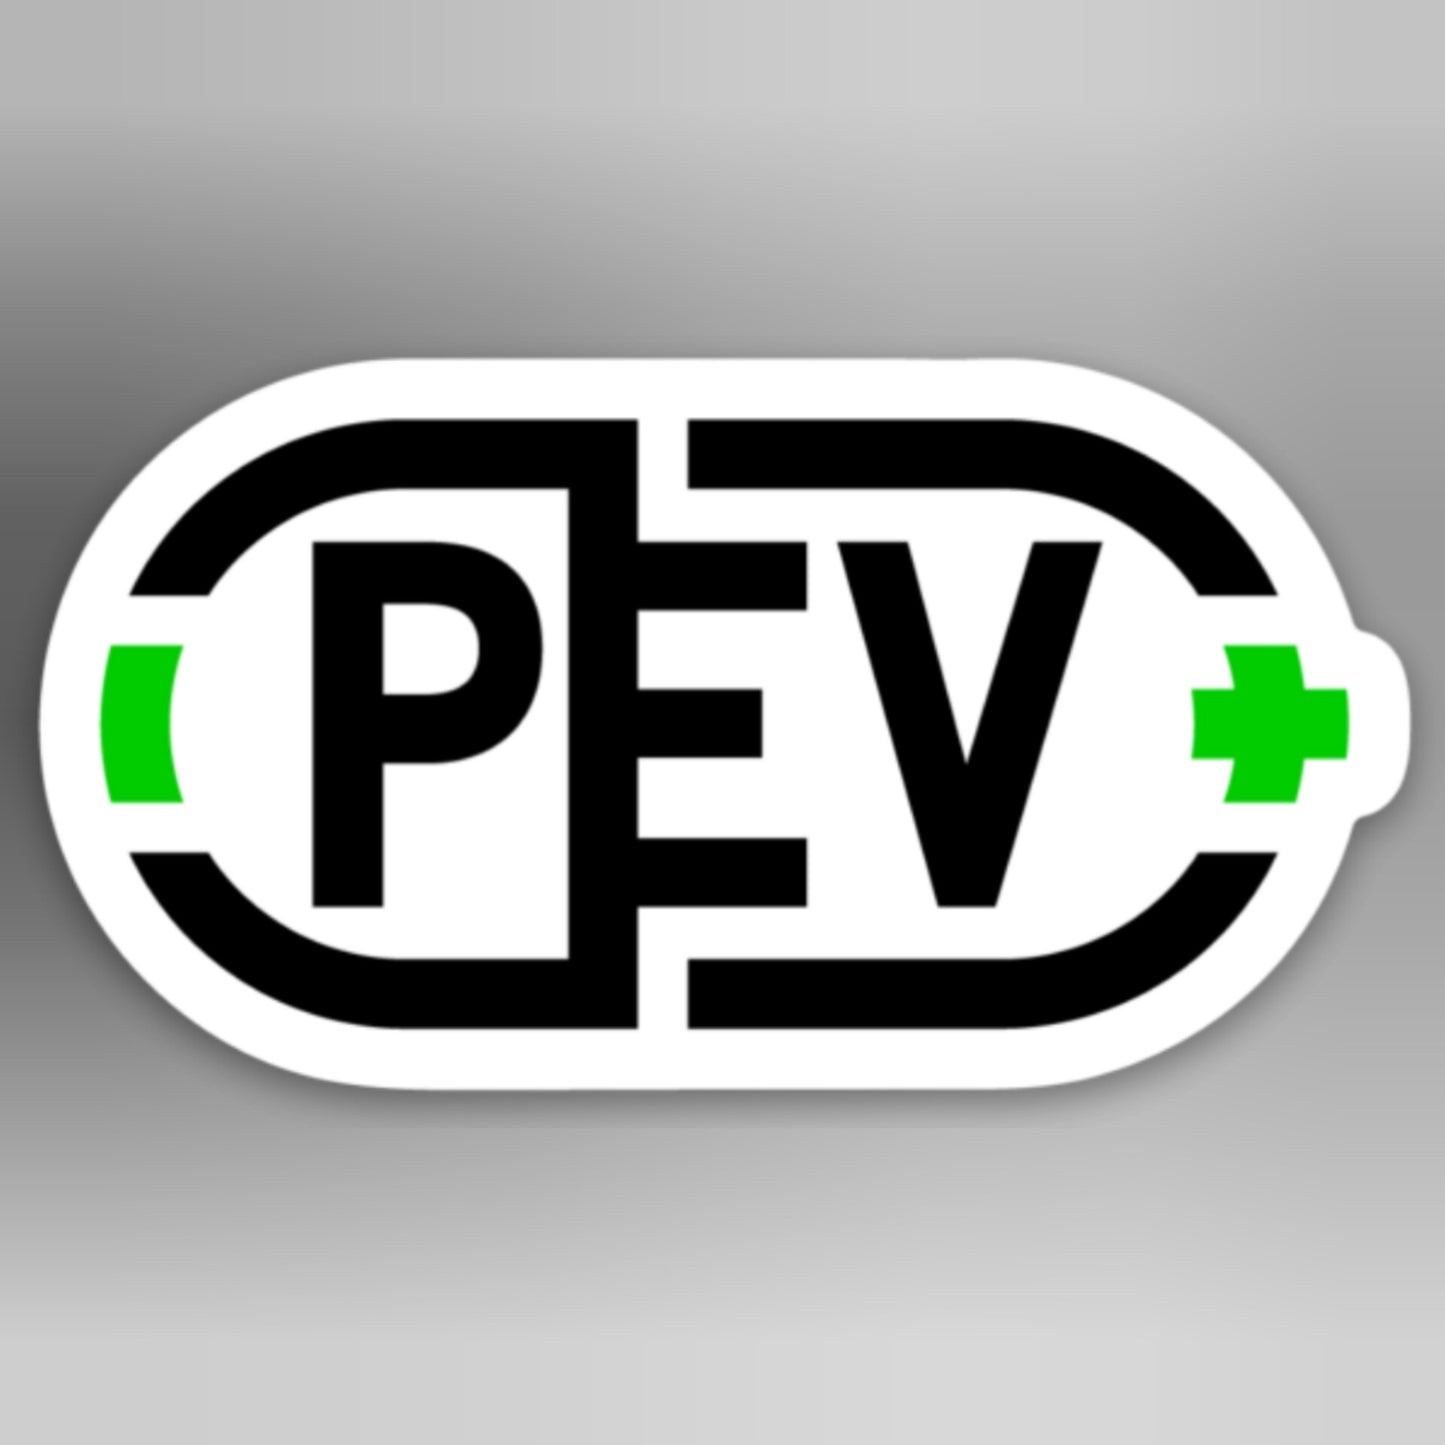 PEV Dispensary Stickers